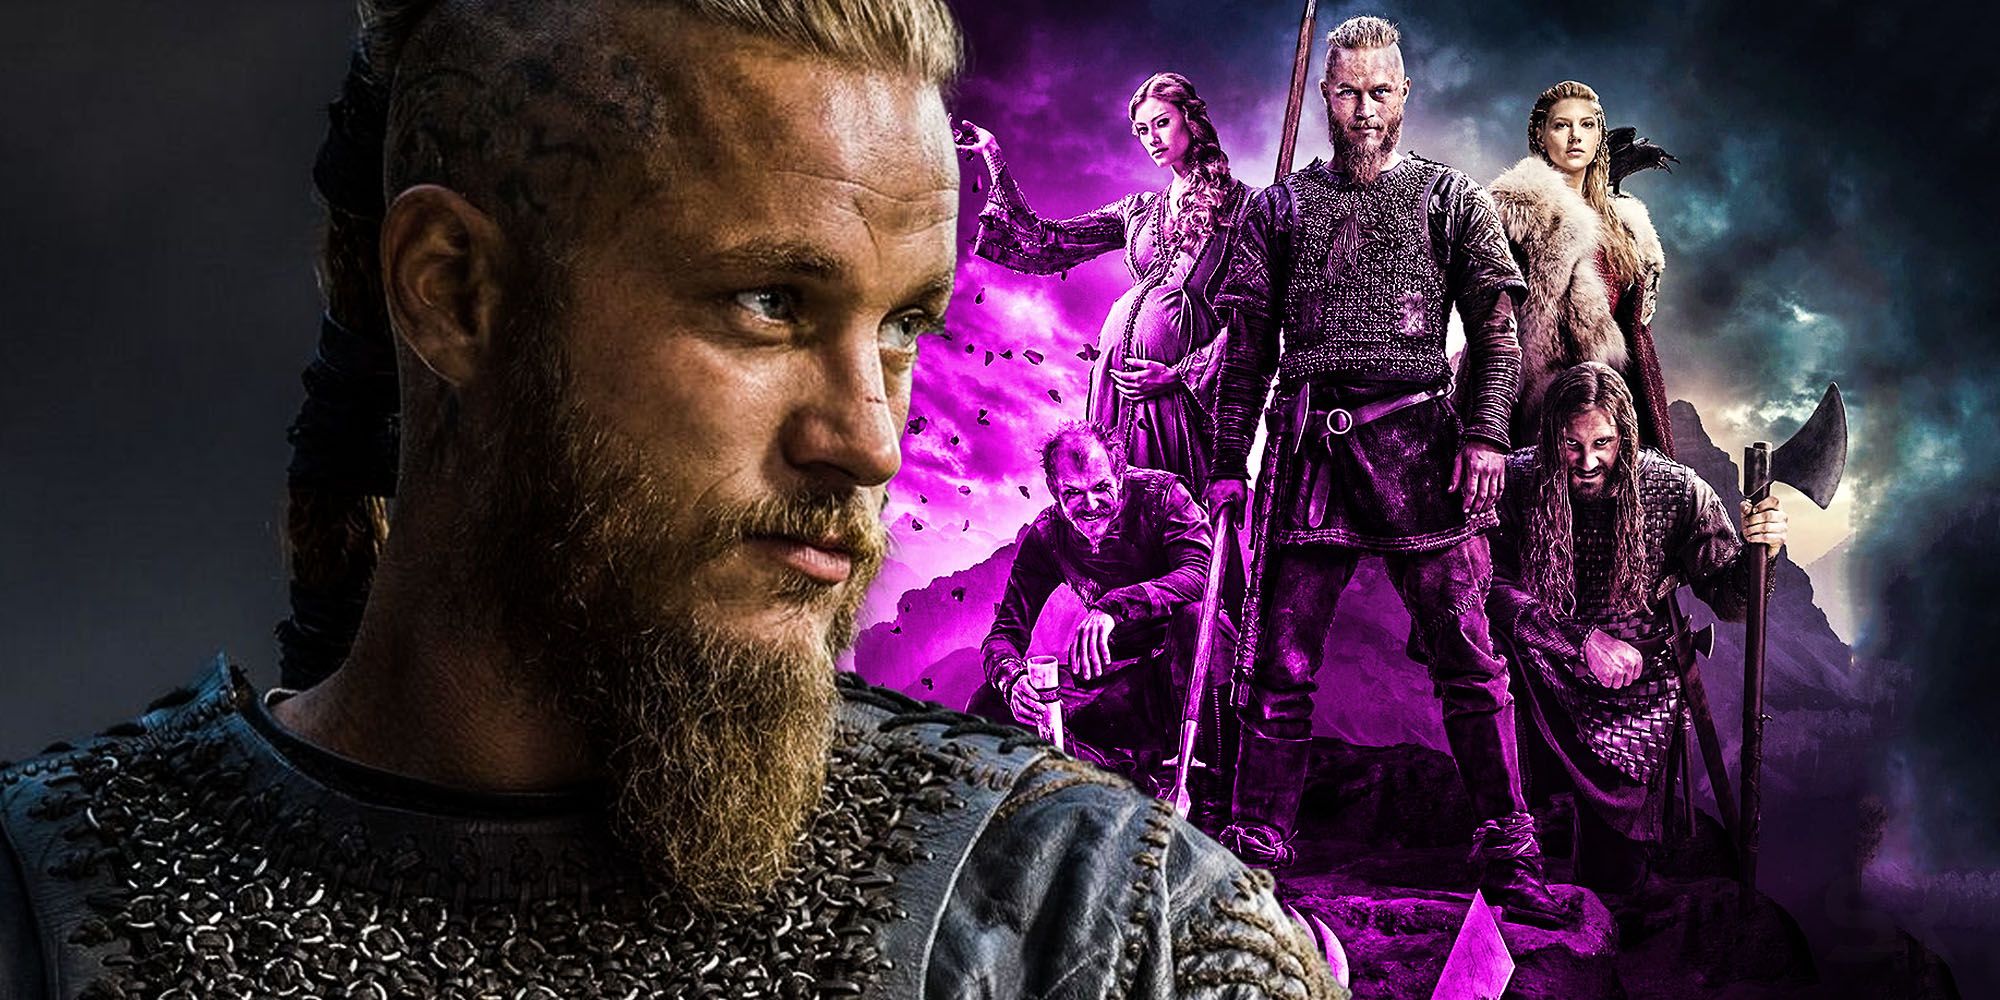 Vikings Season 4 Spoilers: Ragnar Betrayed by Rollo in Season 3 Finale